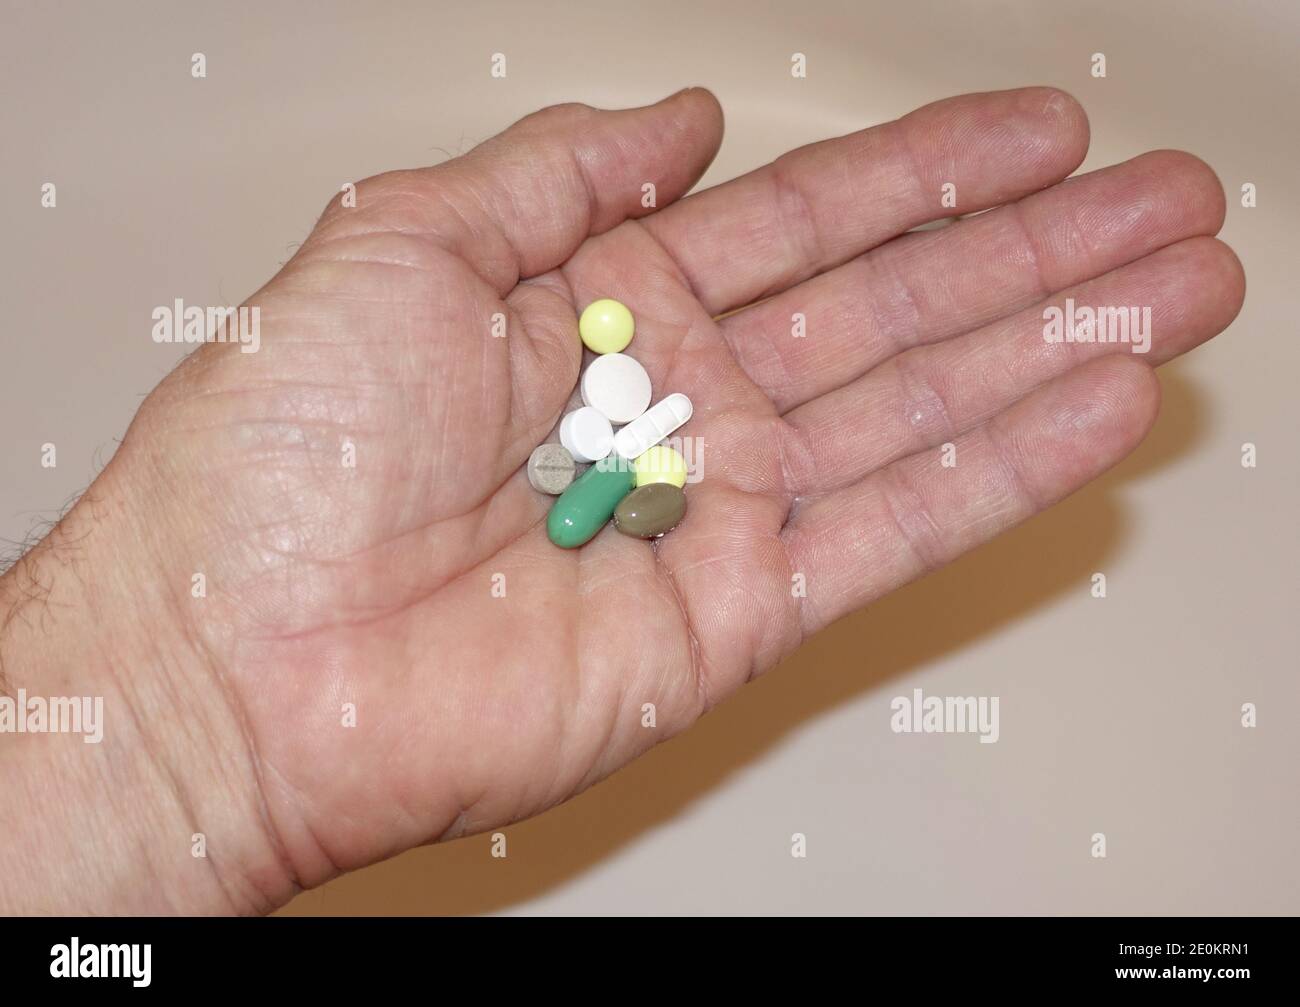 geöffnete Hand mit mehreren Tabletten - Symbolbild für Medikamentenabhängigkeit Stock Photo